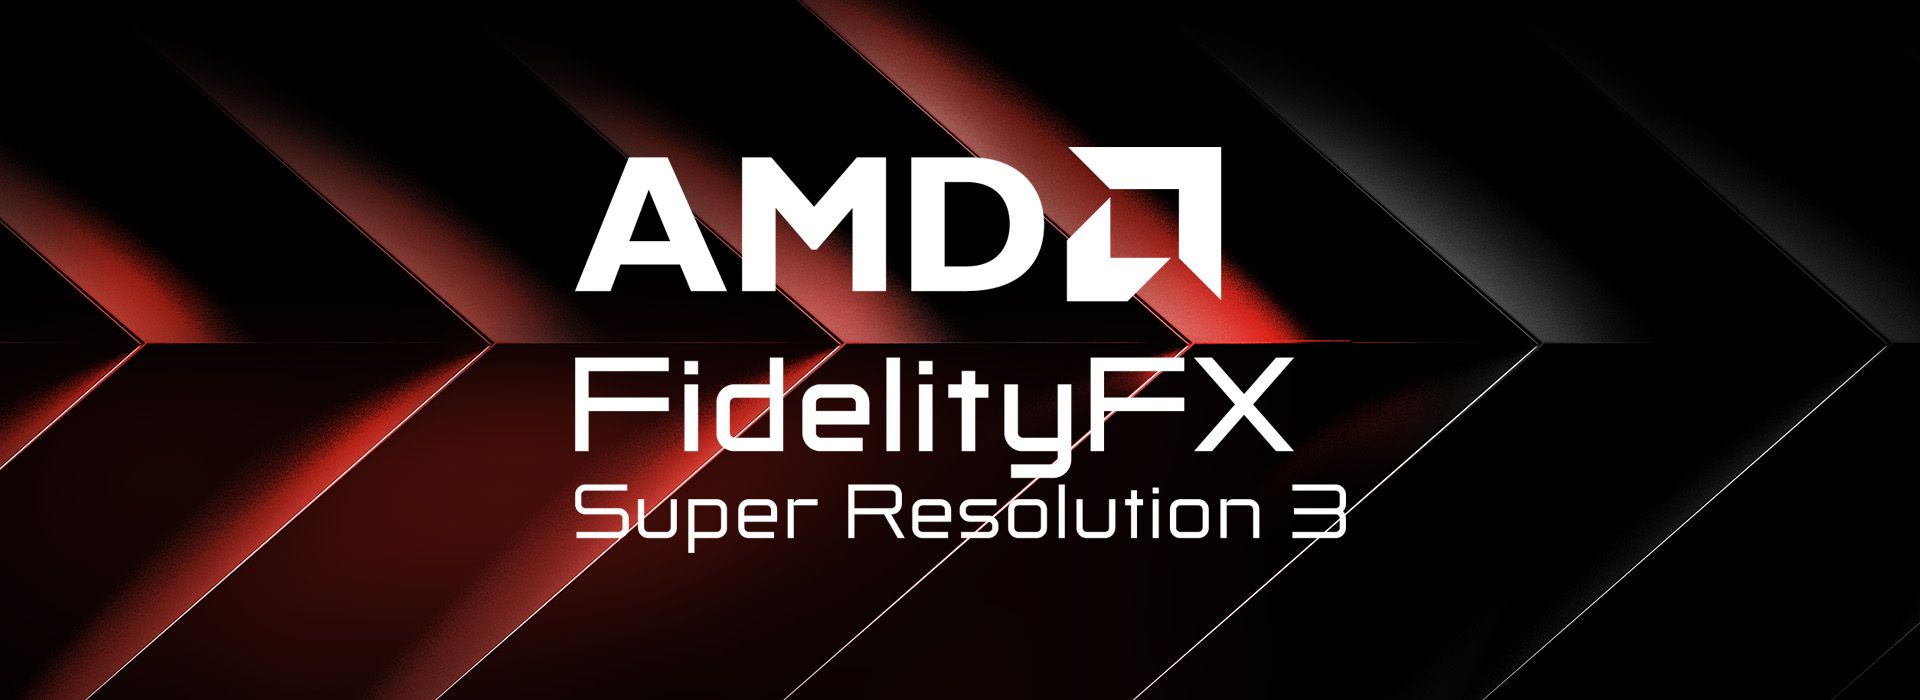 AMD FidelityFX Super Resolution 3 Diperkenalkan Dengan Sokongan Menyeluruh Oleh Pelbagai Kad Grafik